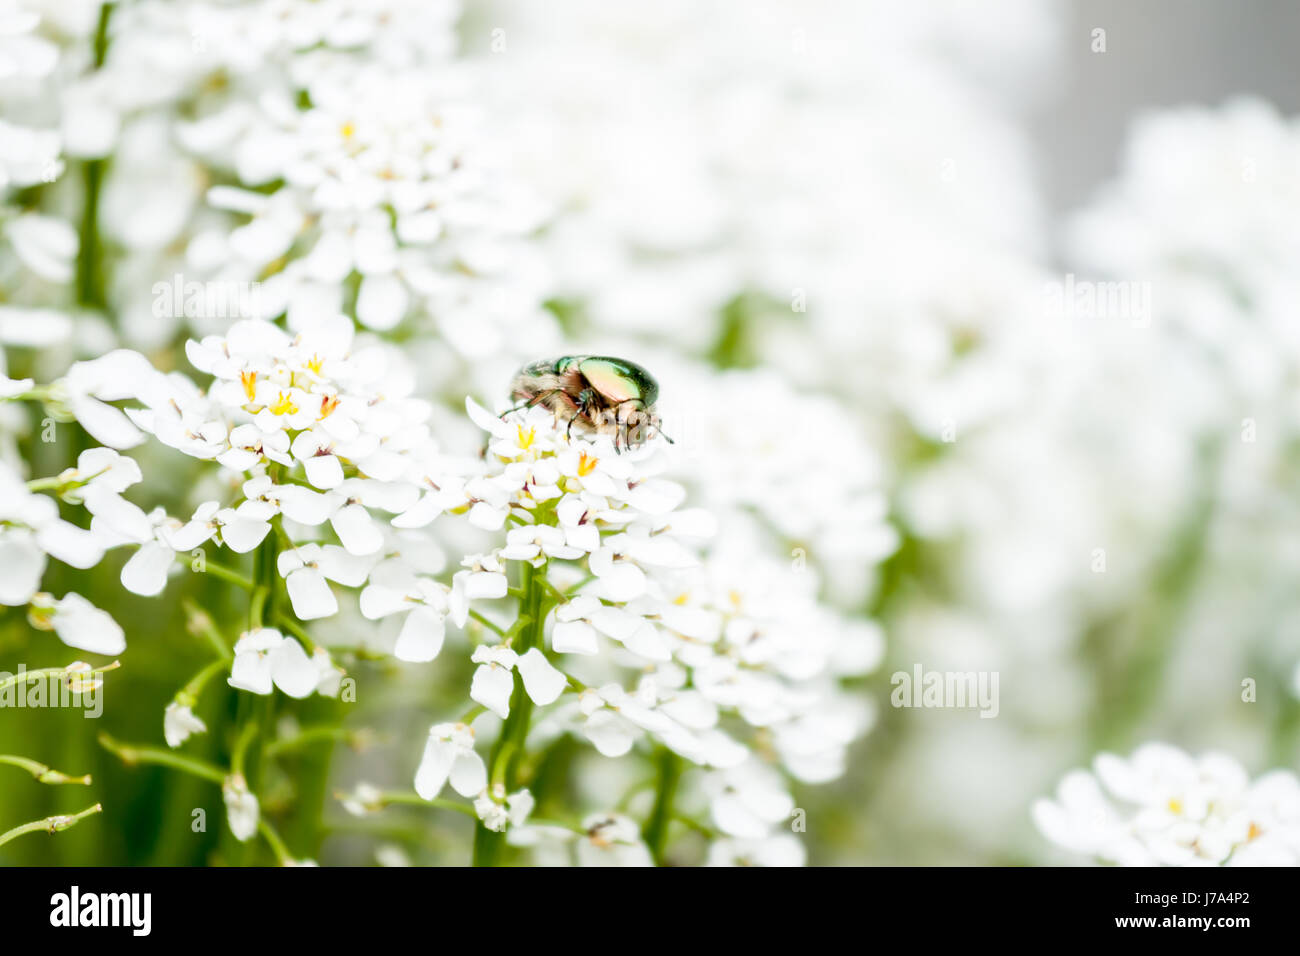 green maybug on white flowers Stock Photo